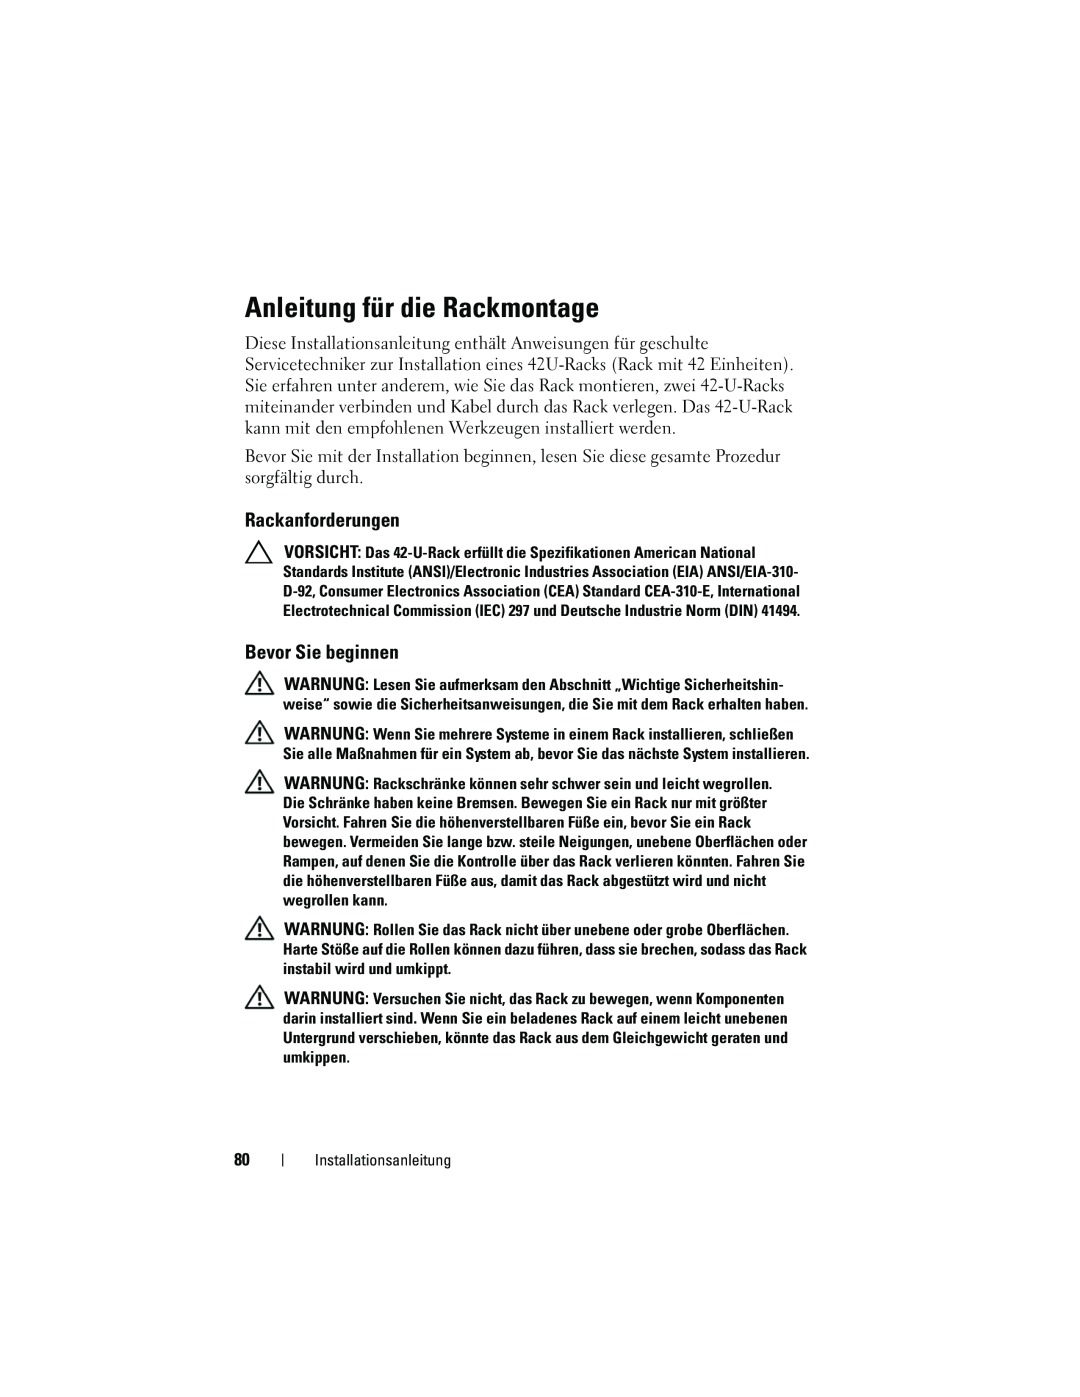 Dell 4220 manual Anleitung für die Rackmontage, Rackanforderungen, Bevor Sie beginnen 